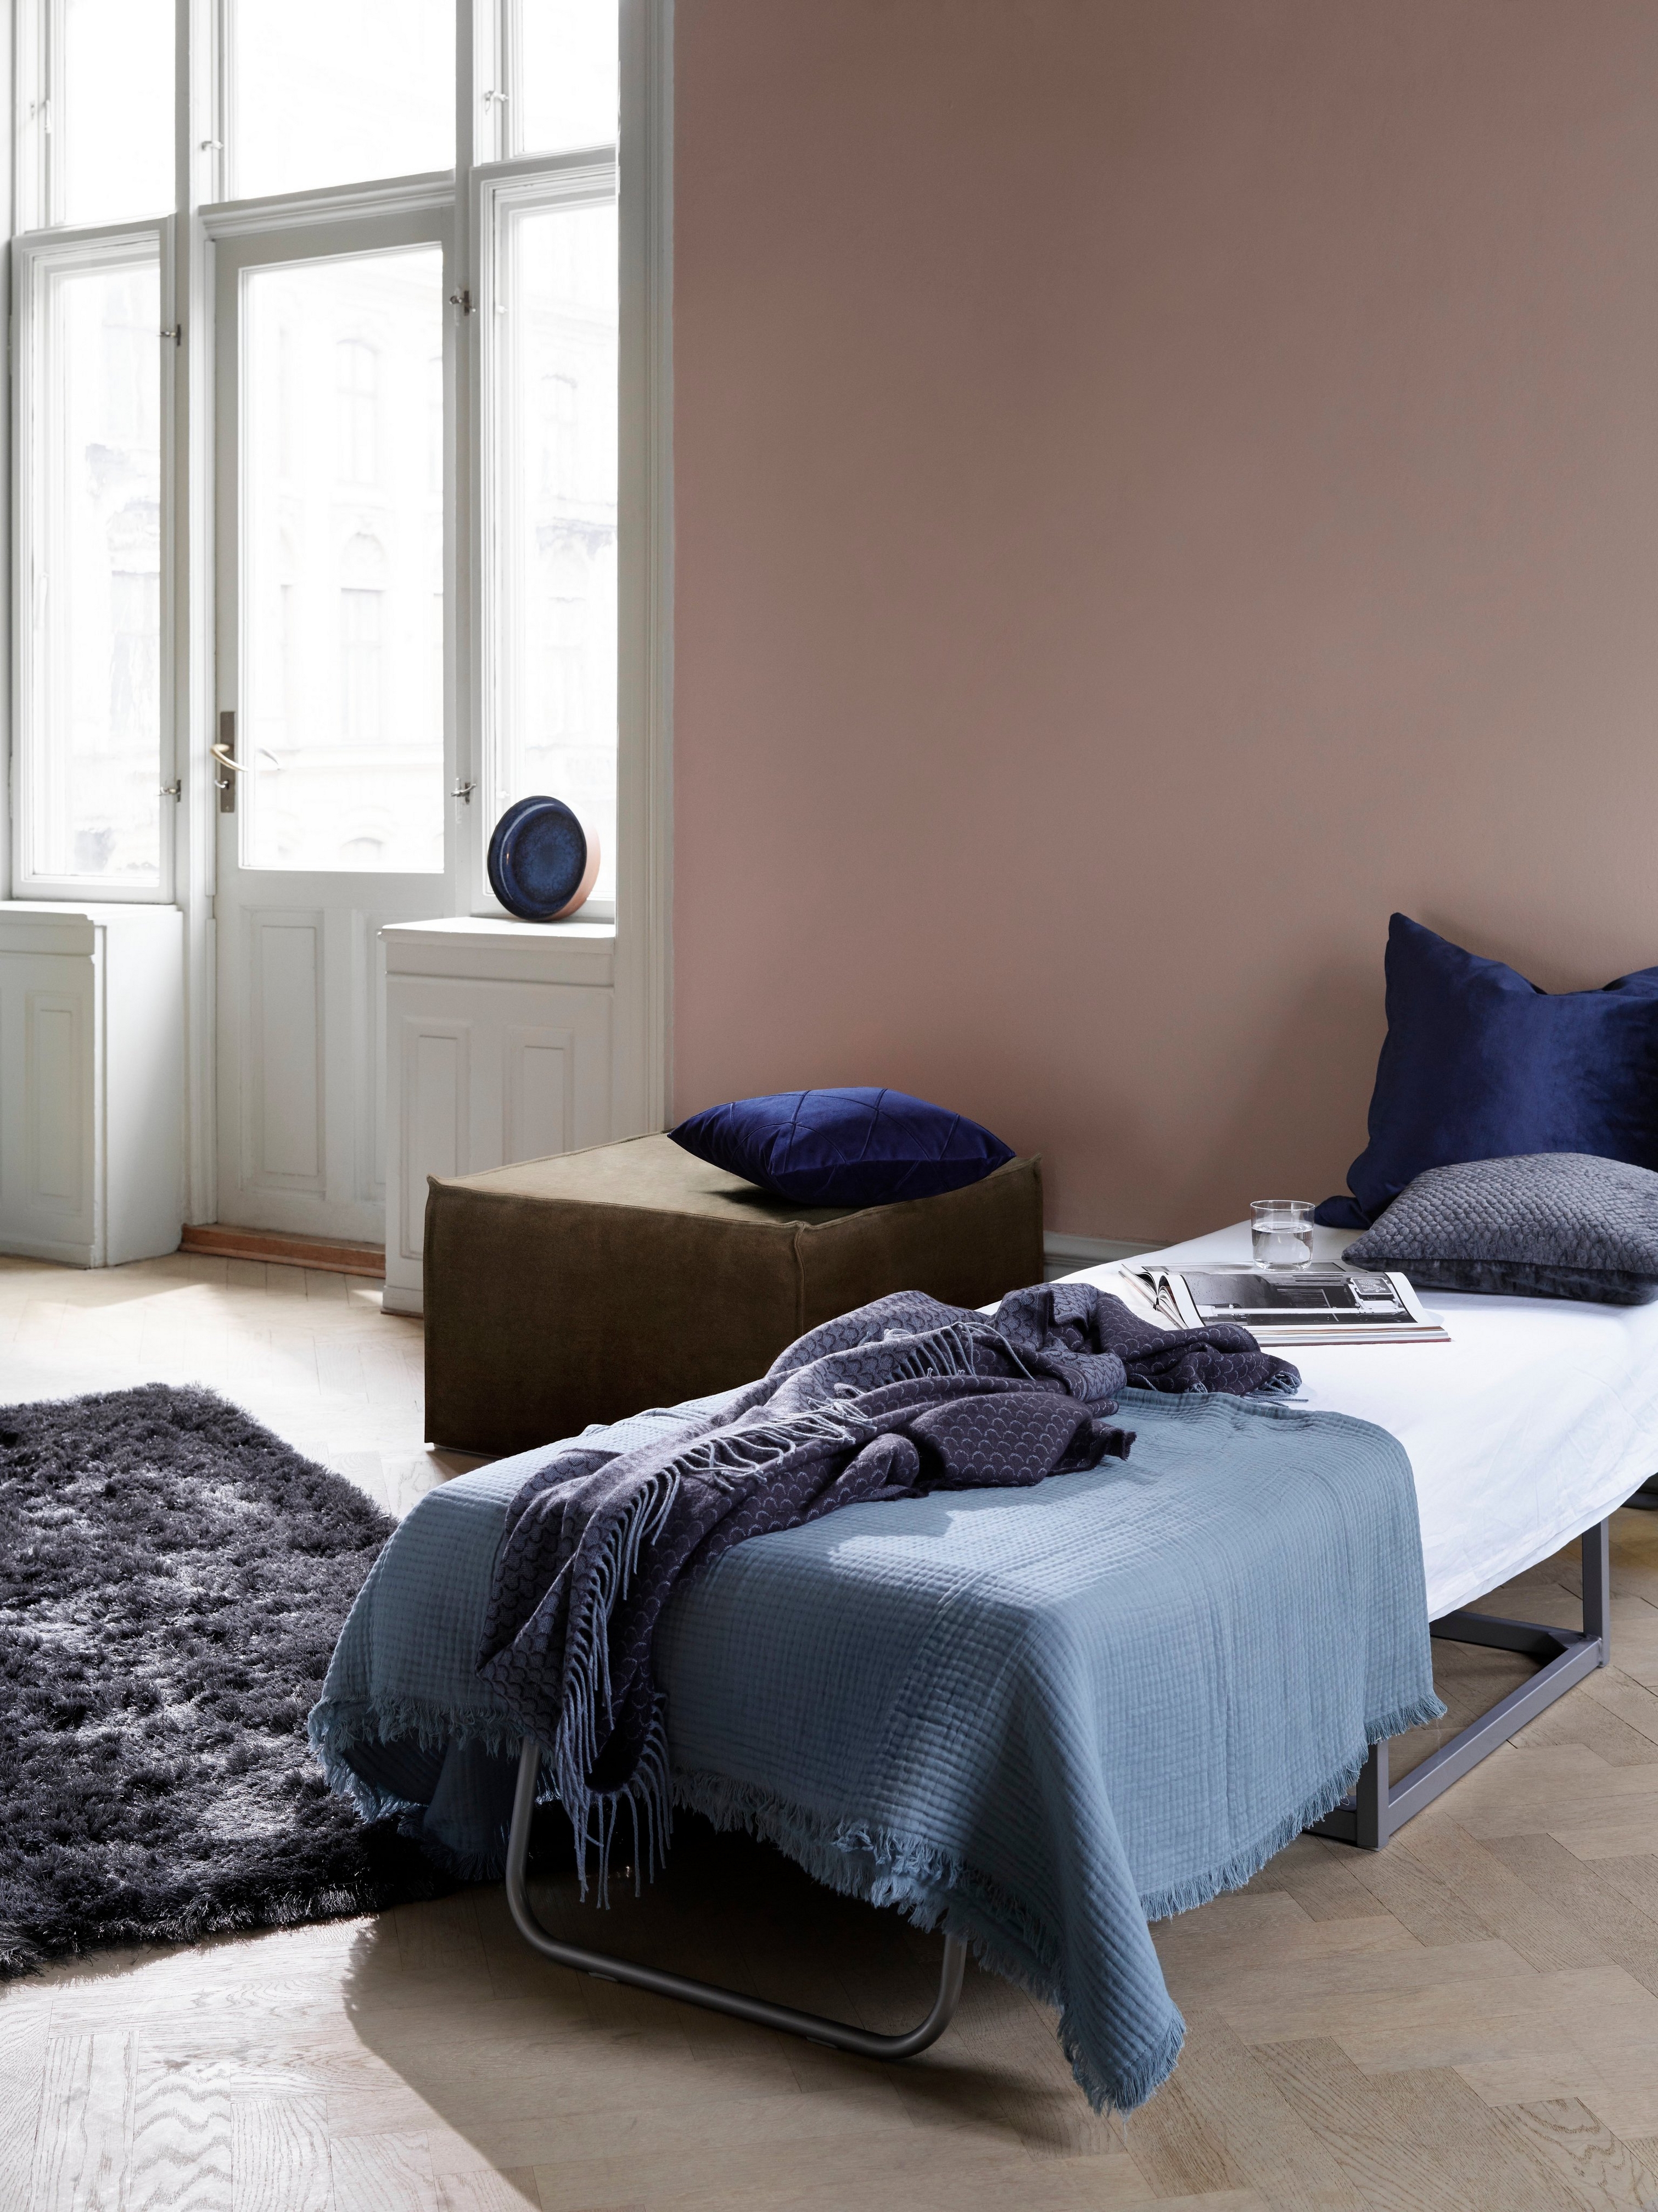 Inbjudande rum med gästsäng, blå sängkläder och mörk fluffig matta nära ljusa fönster med Xtra fotpall.